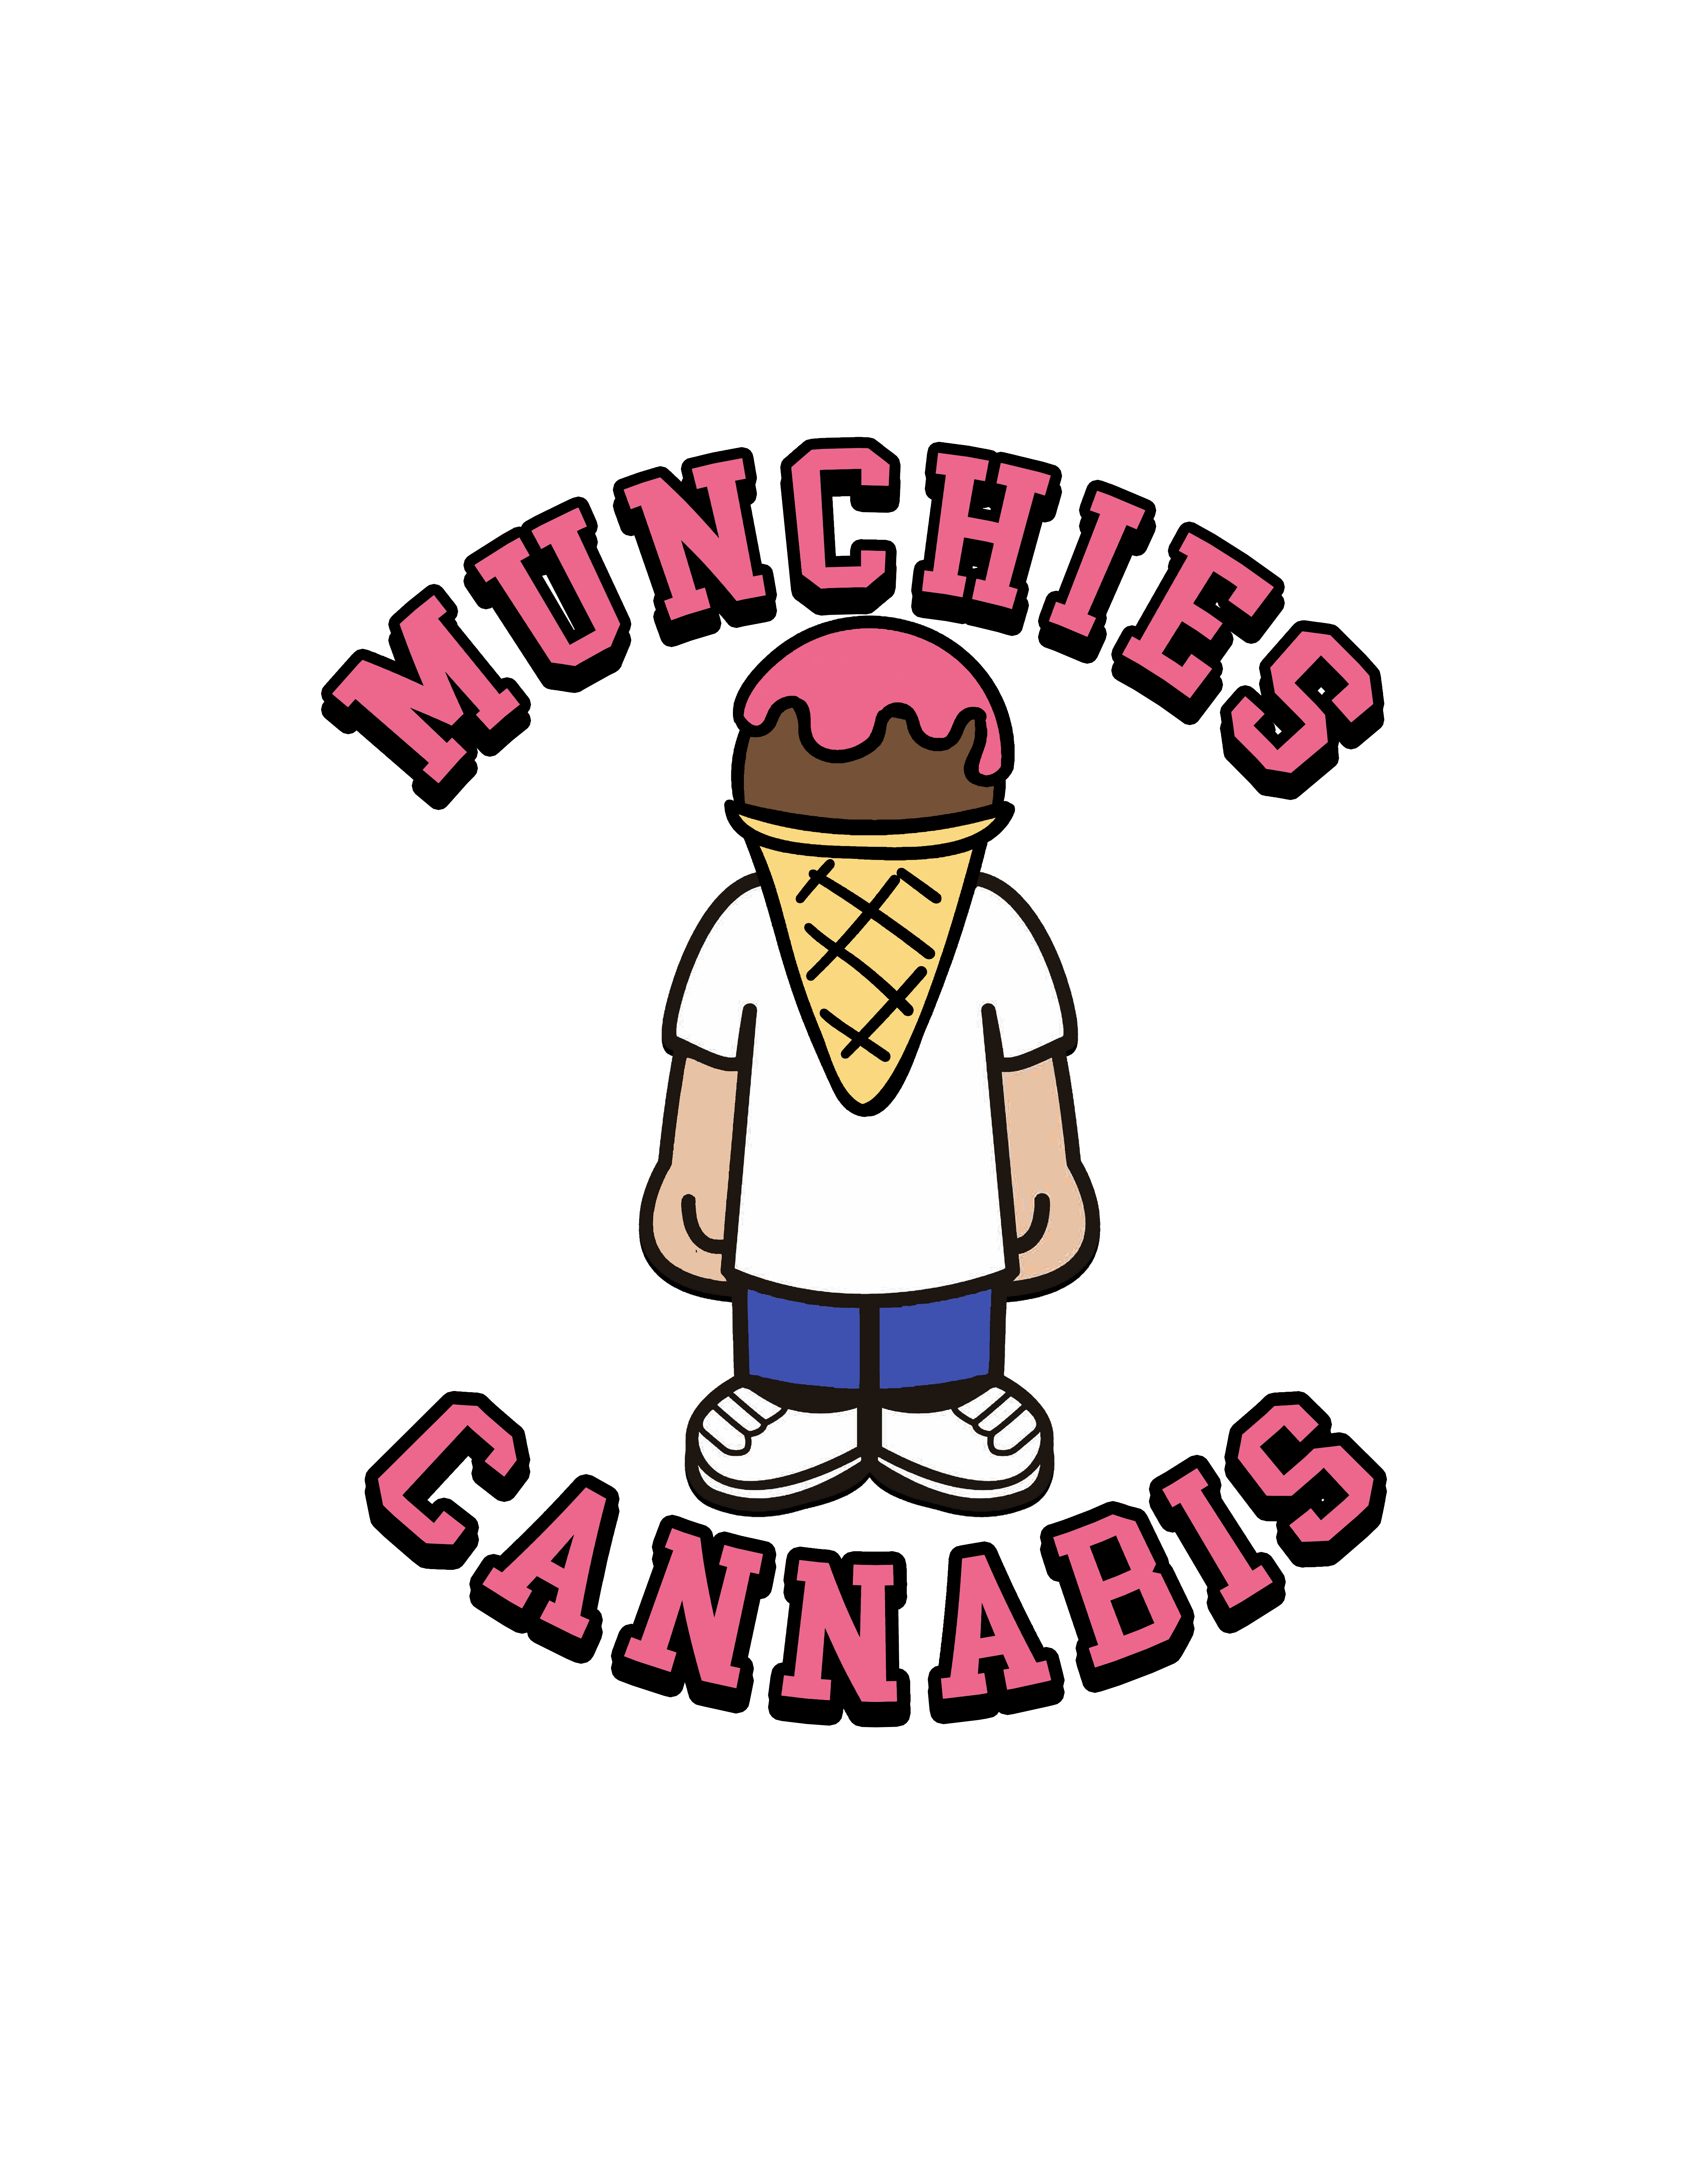 Munchies Cannabis Beechwood - Vanier - Ottawa logo